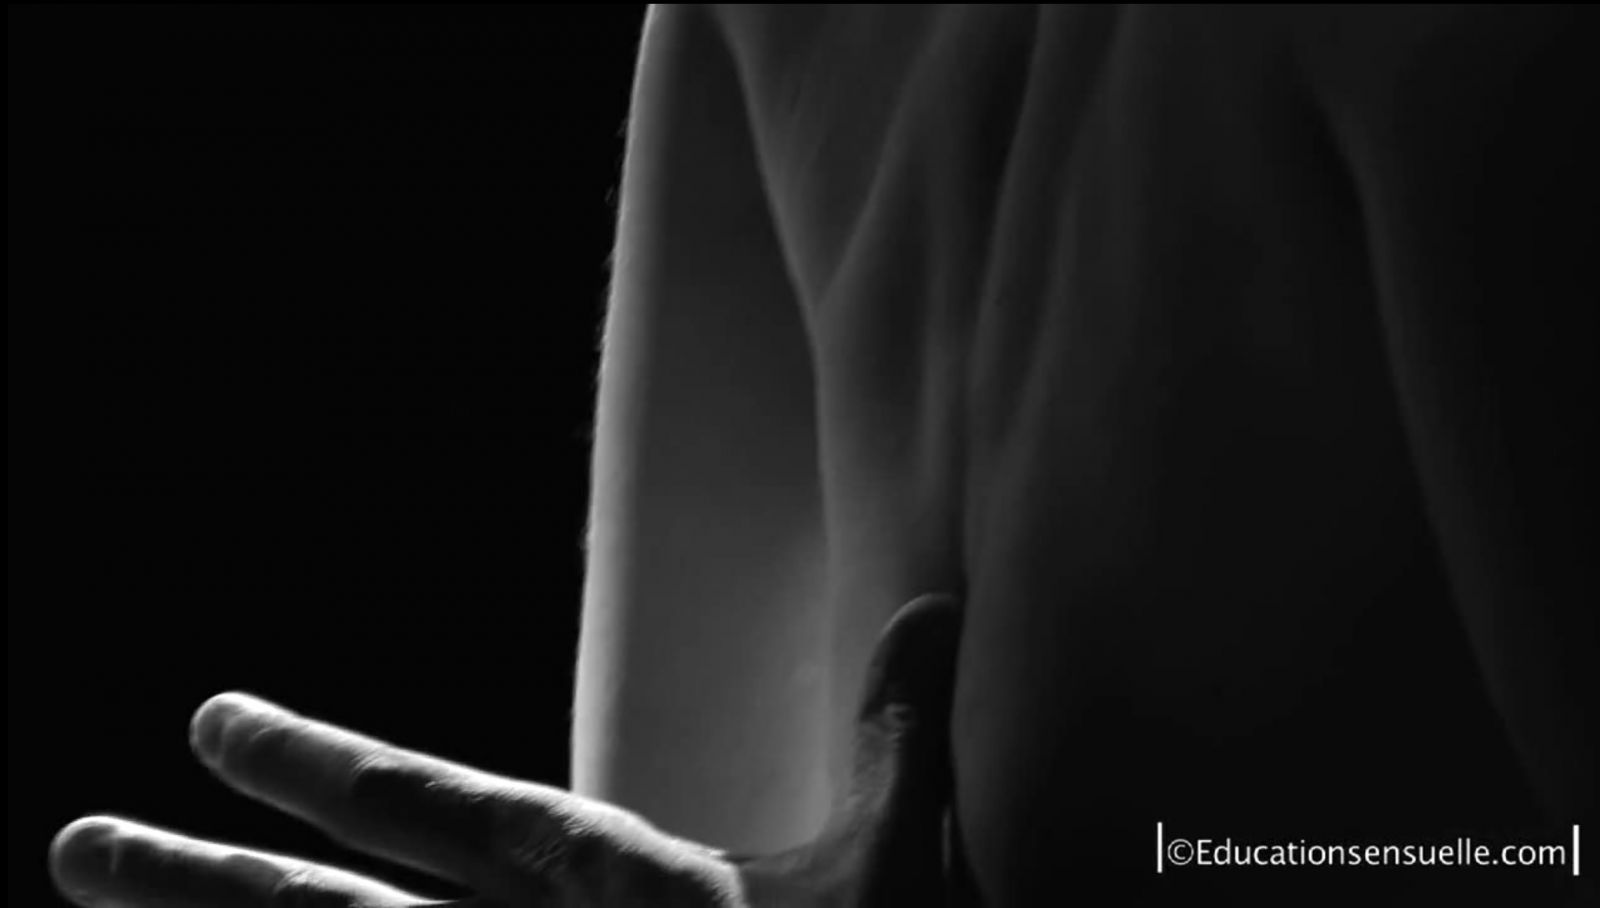 Image extraite des films Education sensuelle.